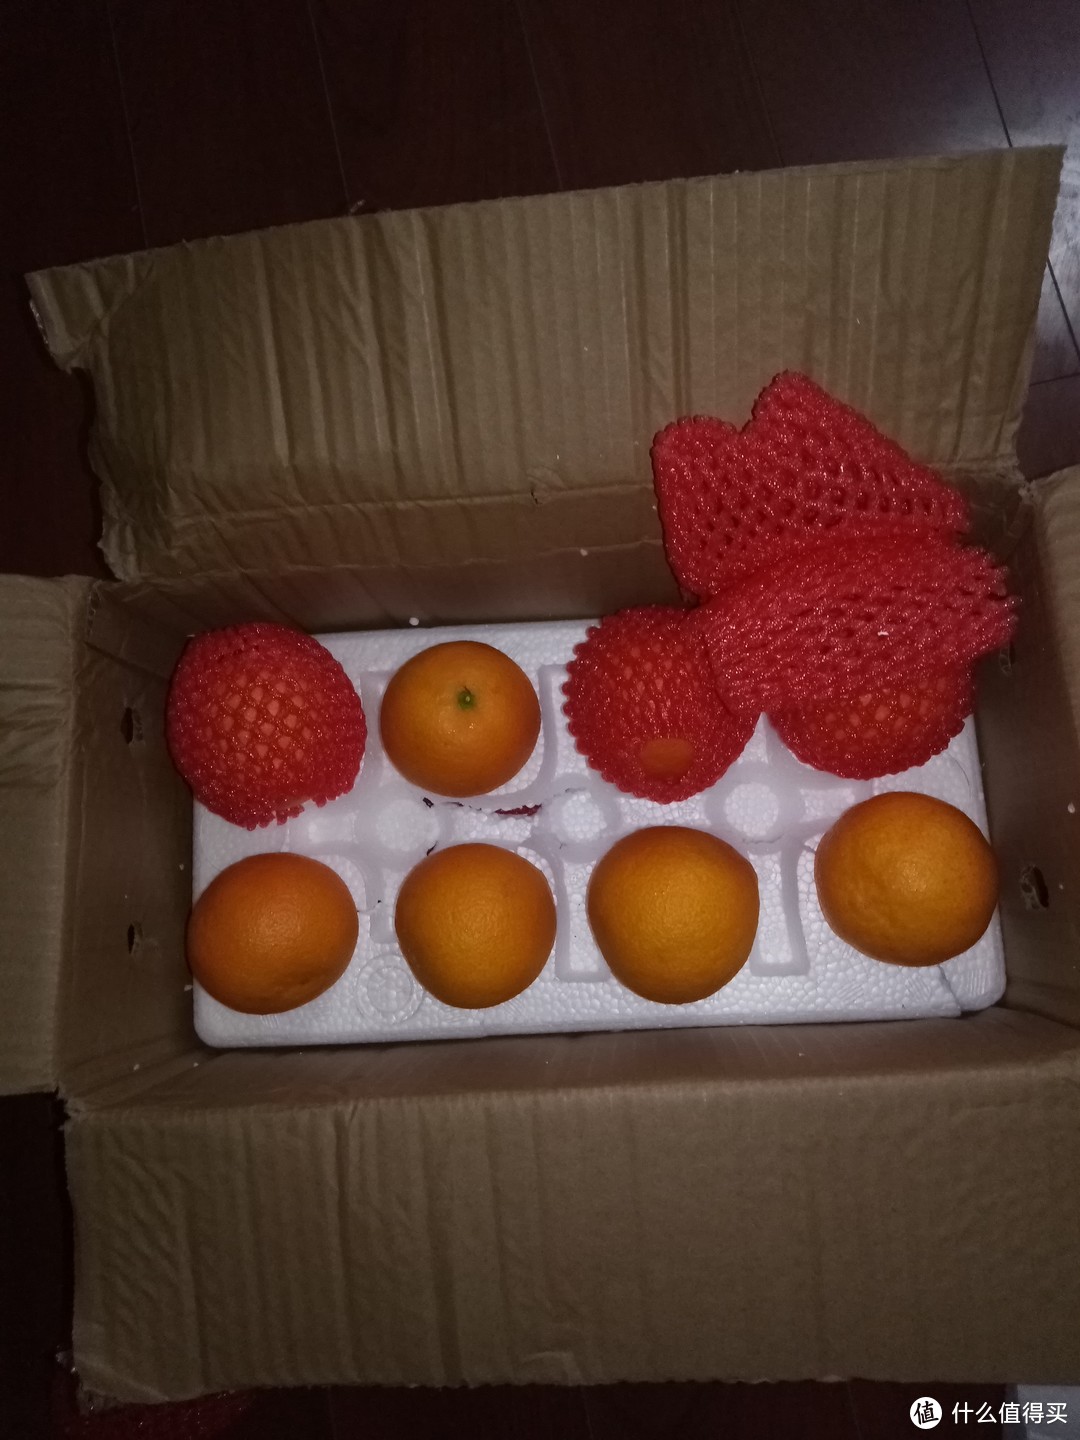 在京东特价版买到了性价比很高的果冻橙